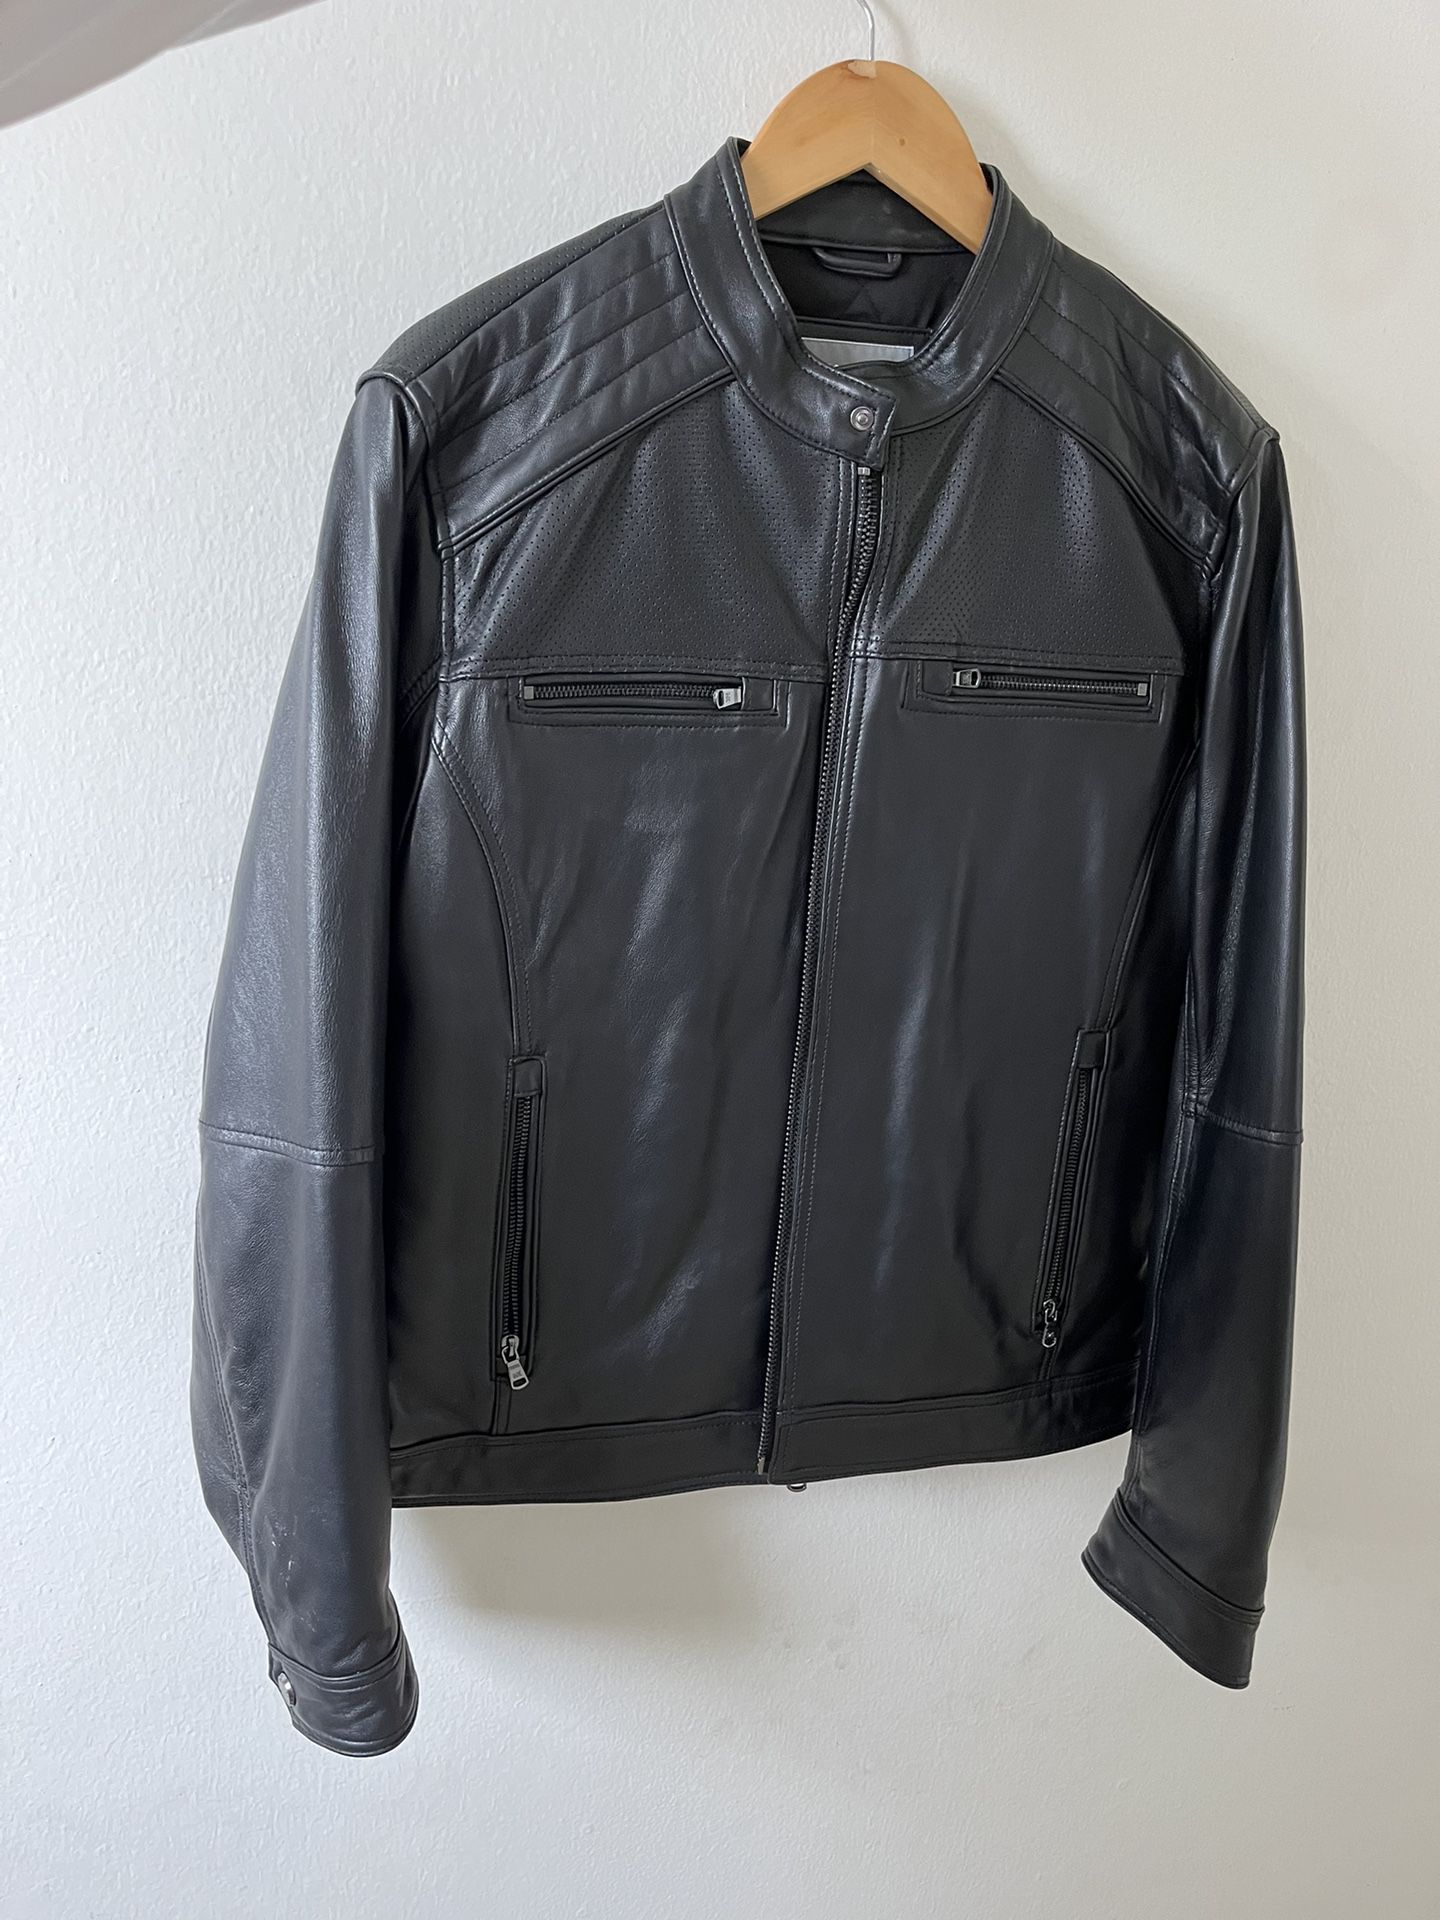 Leather Jacket - Michael Kors ($600 Value)